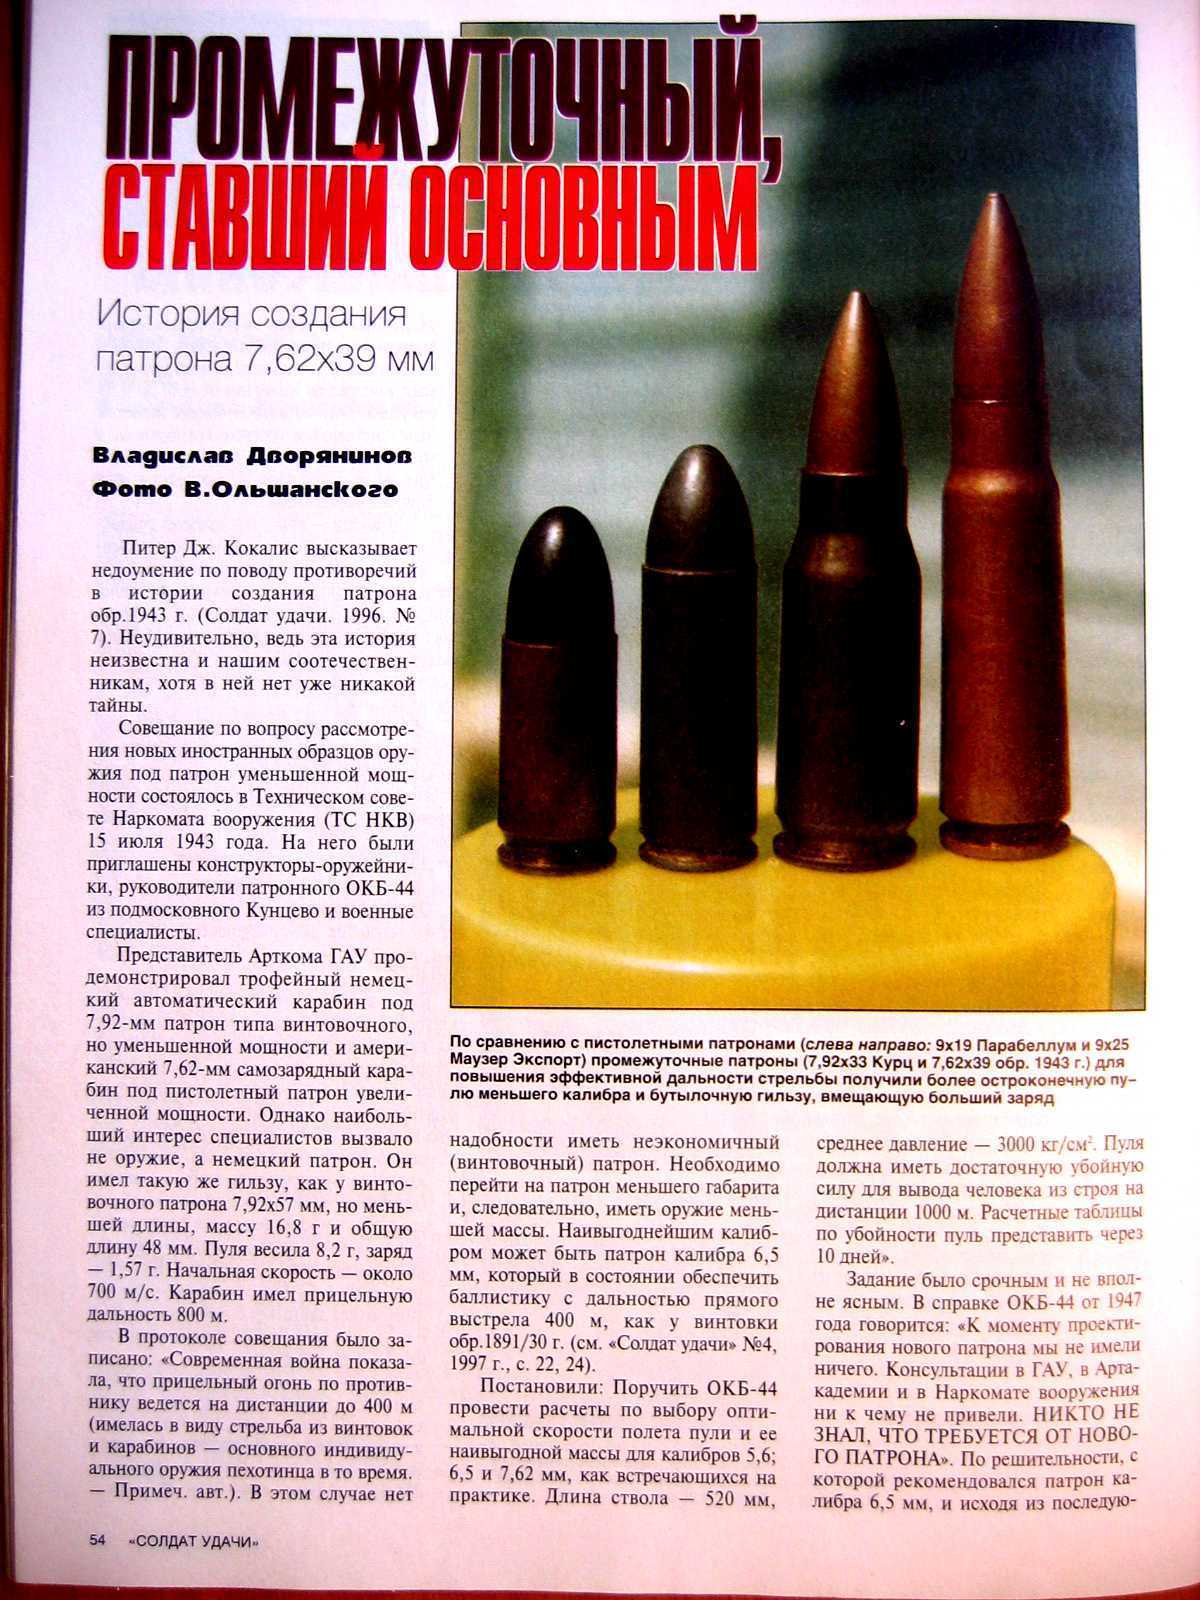 ✅ меры безопасности при стрельбе: требования при проведении стрельб из пм, запрещается использовать боеприпасы при учебных - ligastrelkov.ru